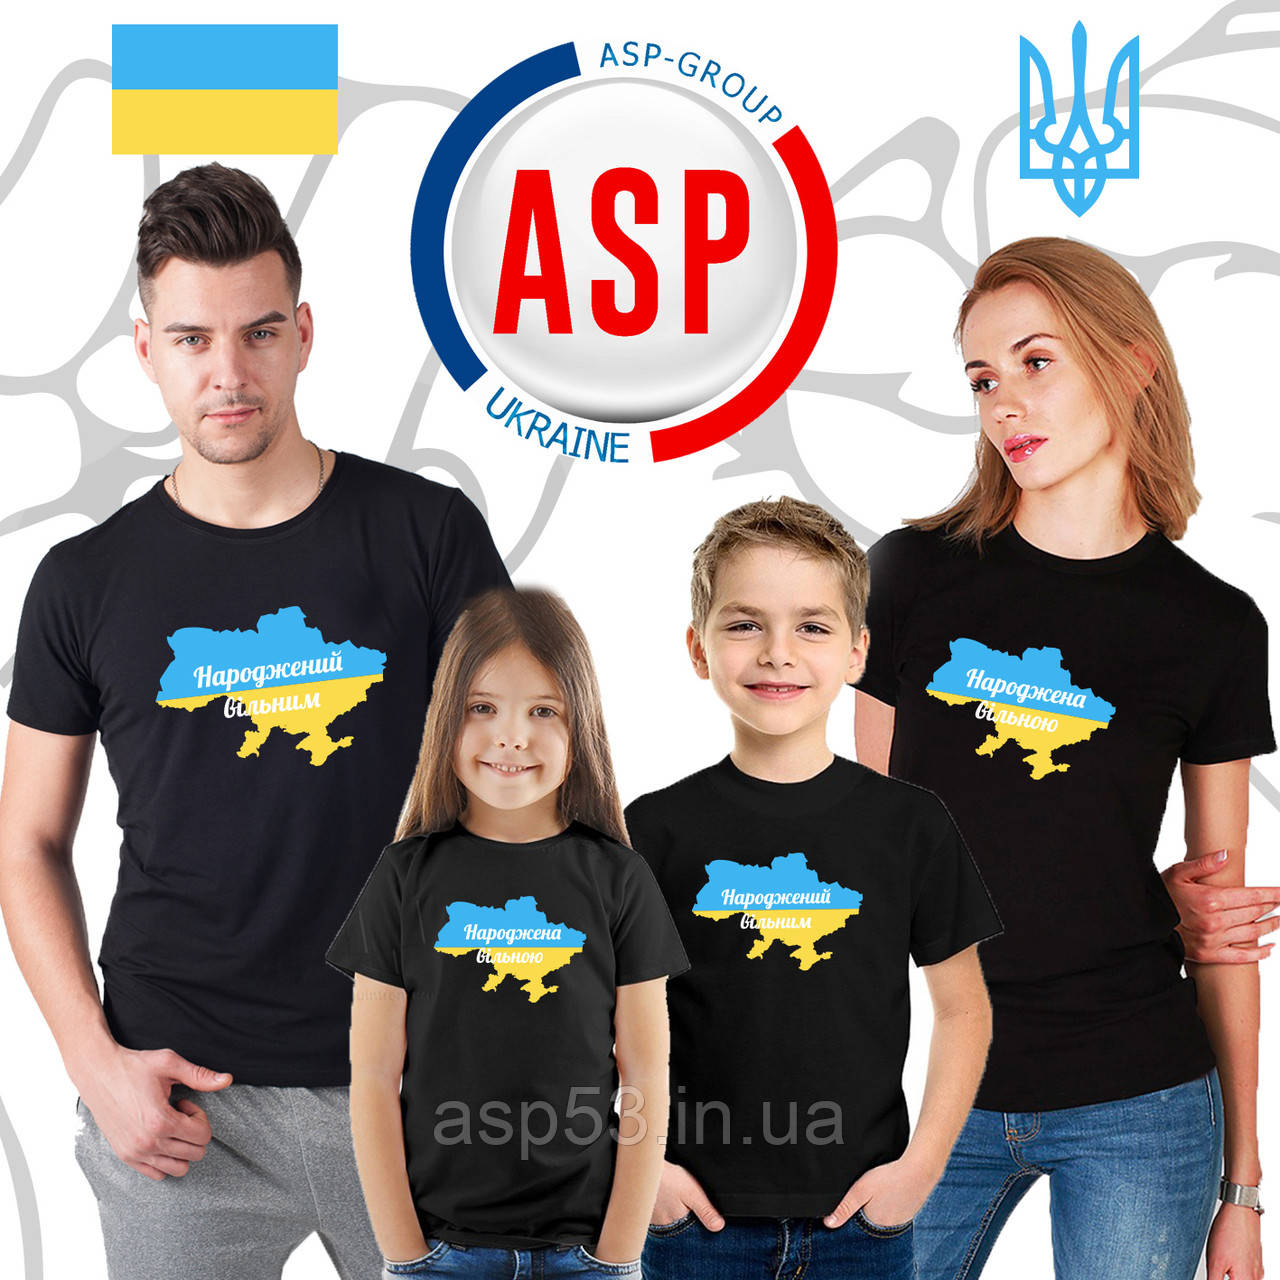 Футболки для всієї родини Family Look народжений вільним, народжена вільною з мапою України від 3х років